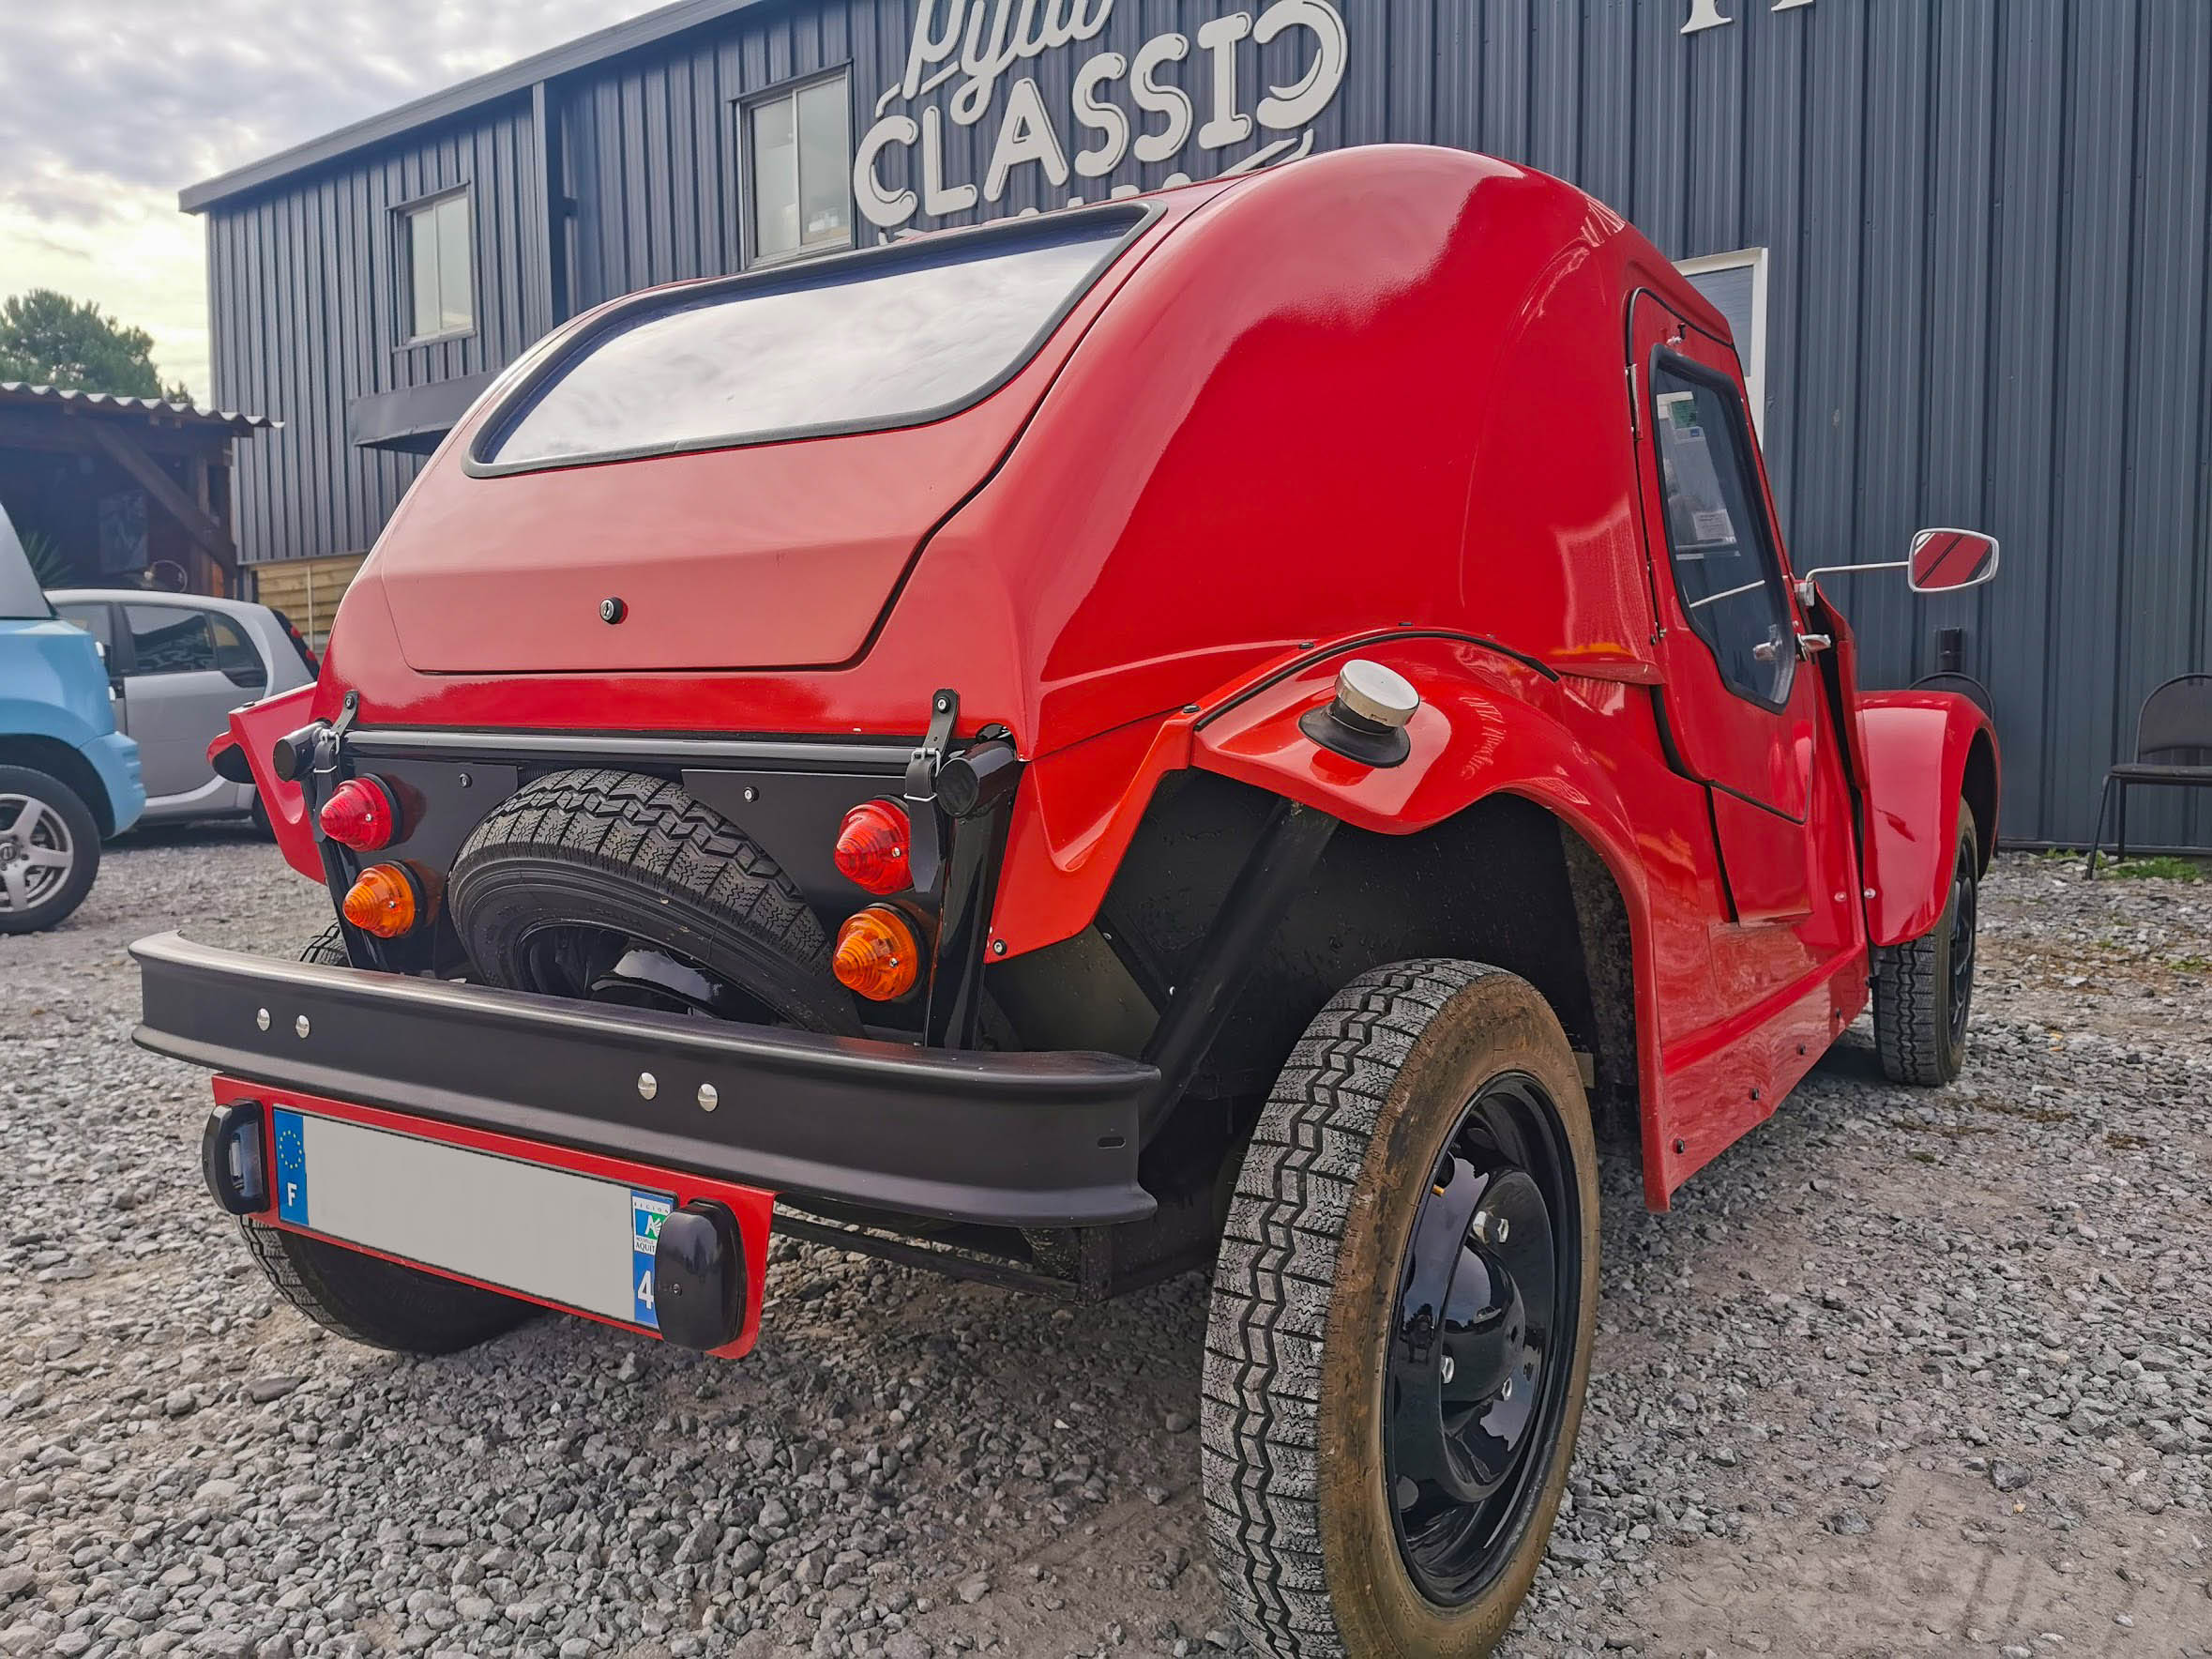 A vendre Diaggo (kit car sur dyane) restauré entièrement en 2018